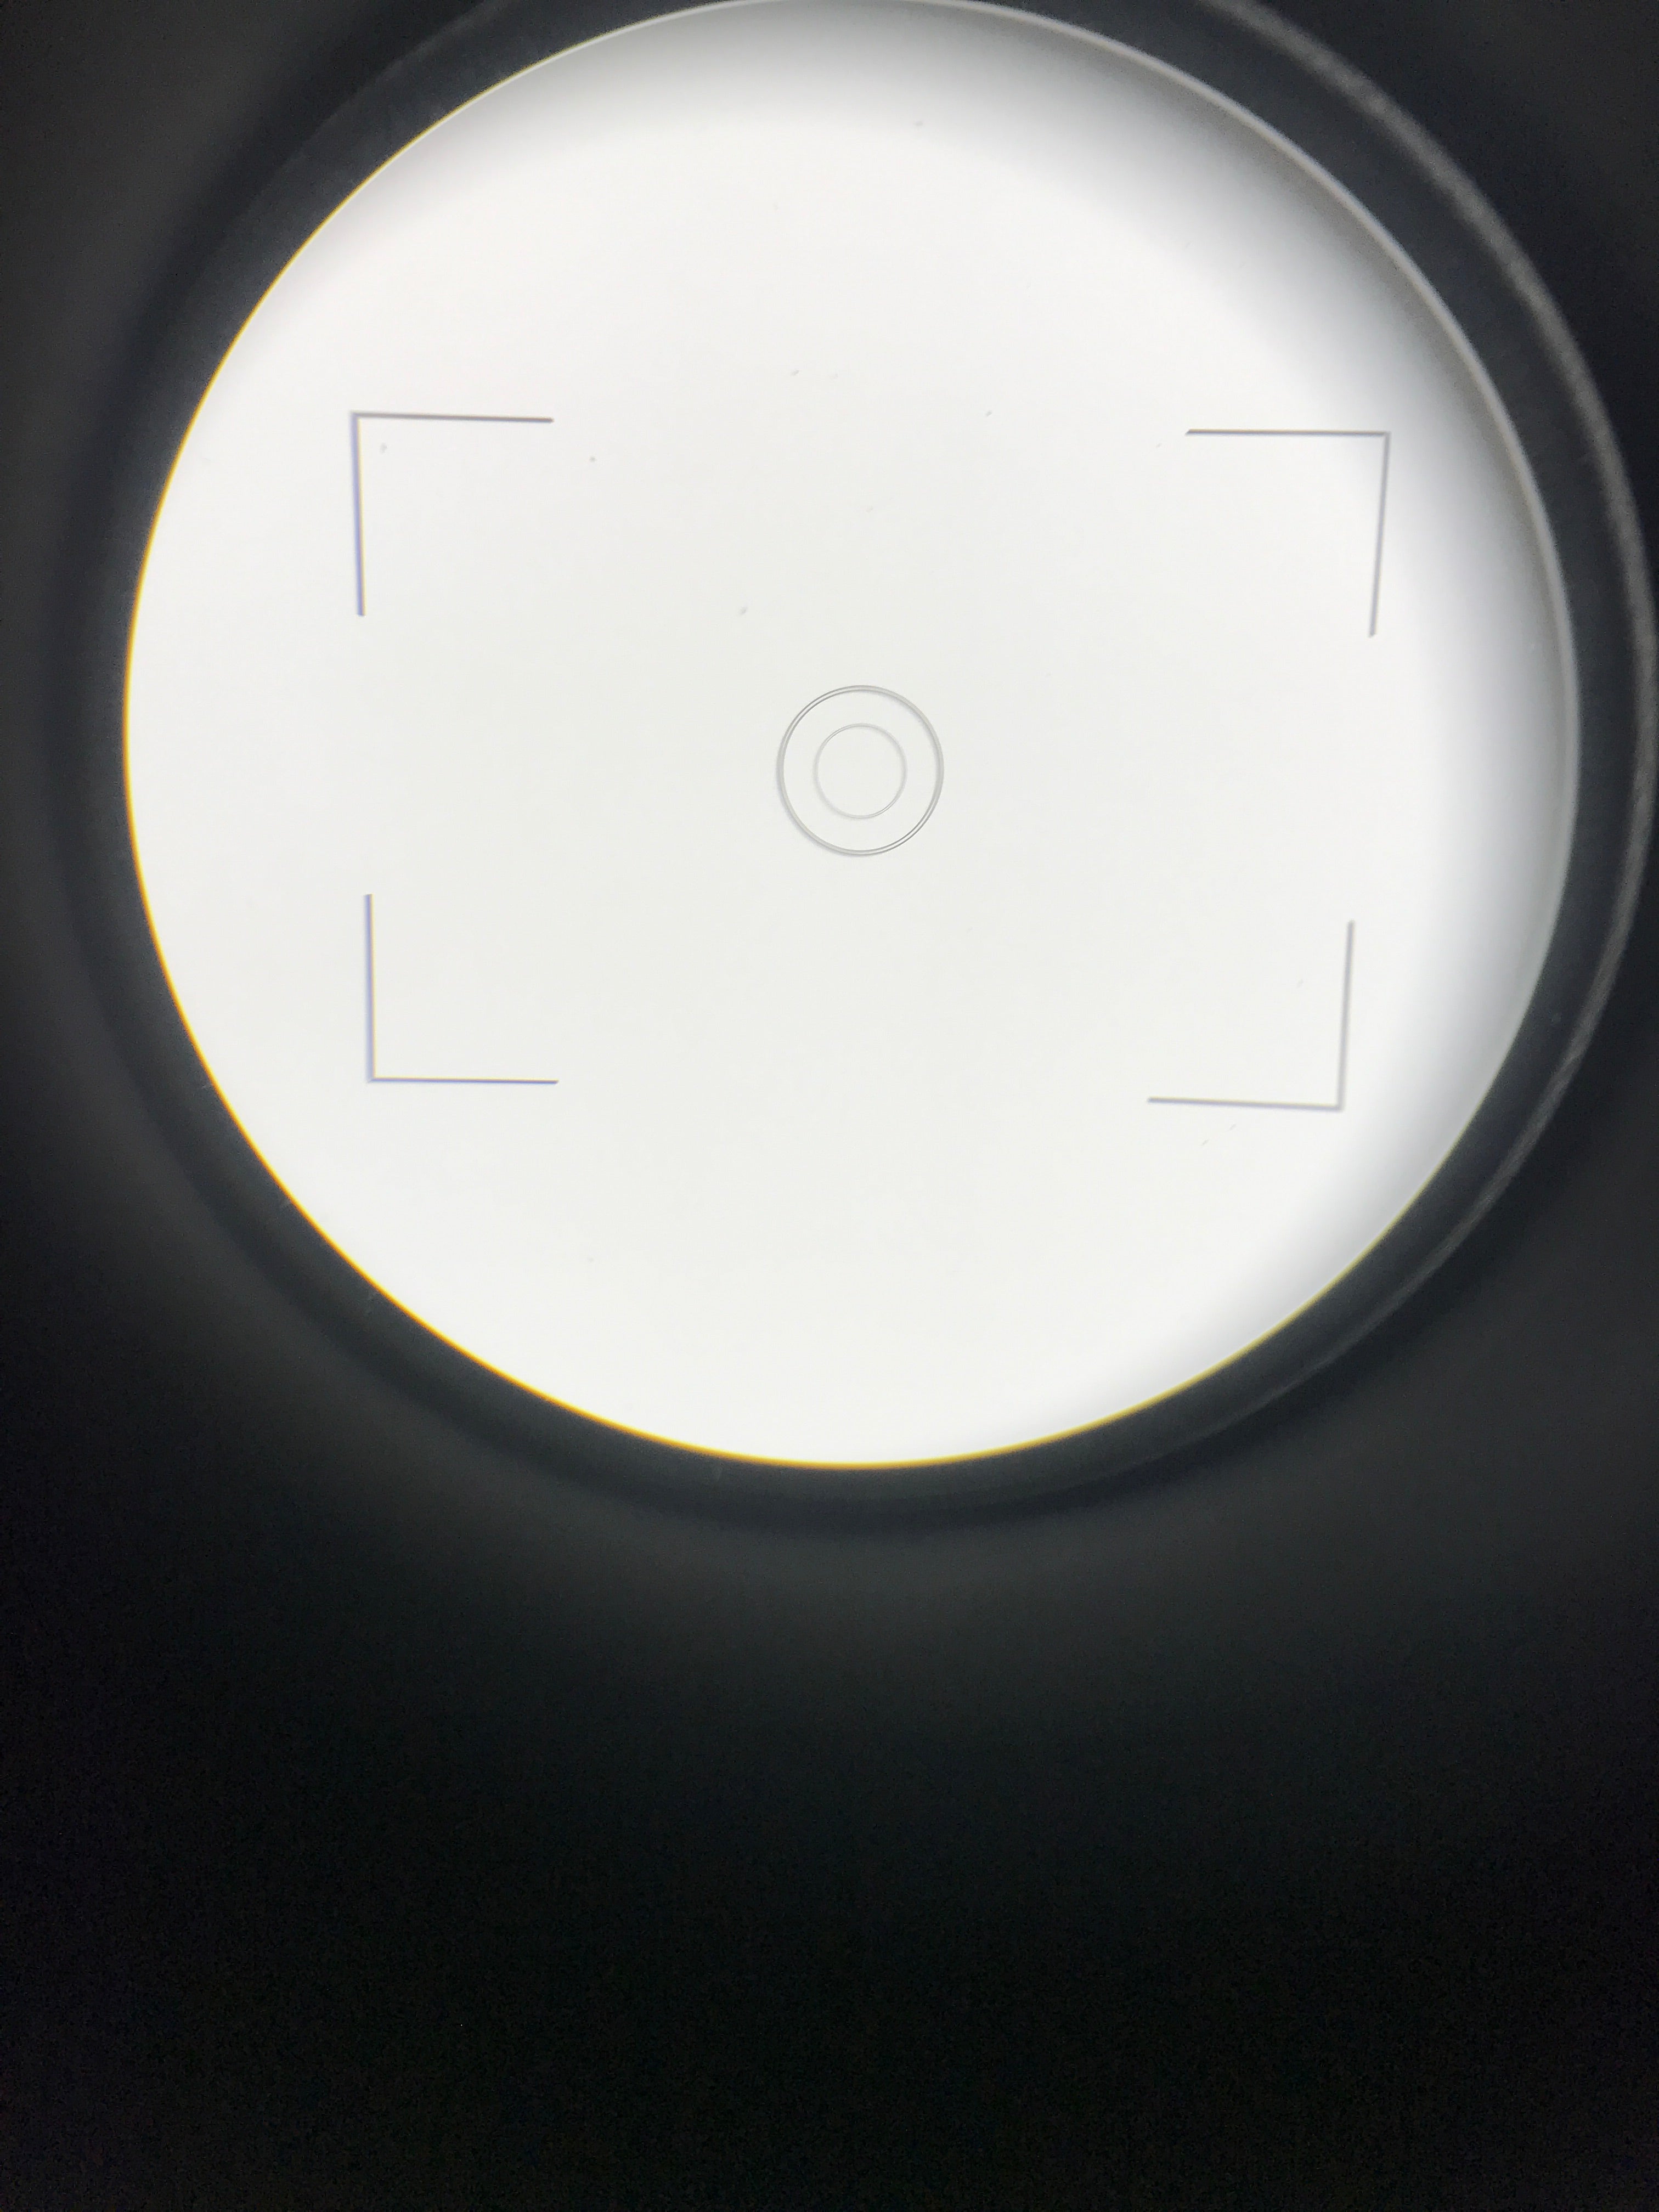 Leitz Wetzlar Ortholux Trinocular Microscope w/ 2 Objectives Germany